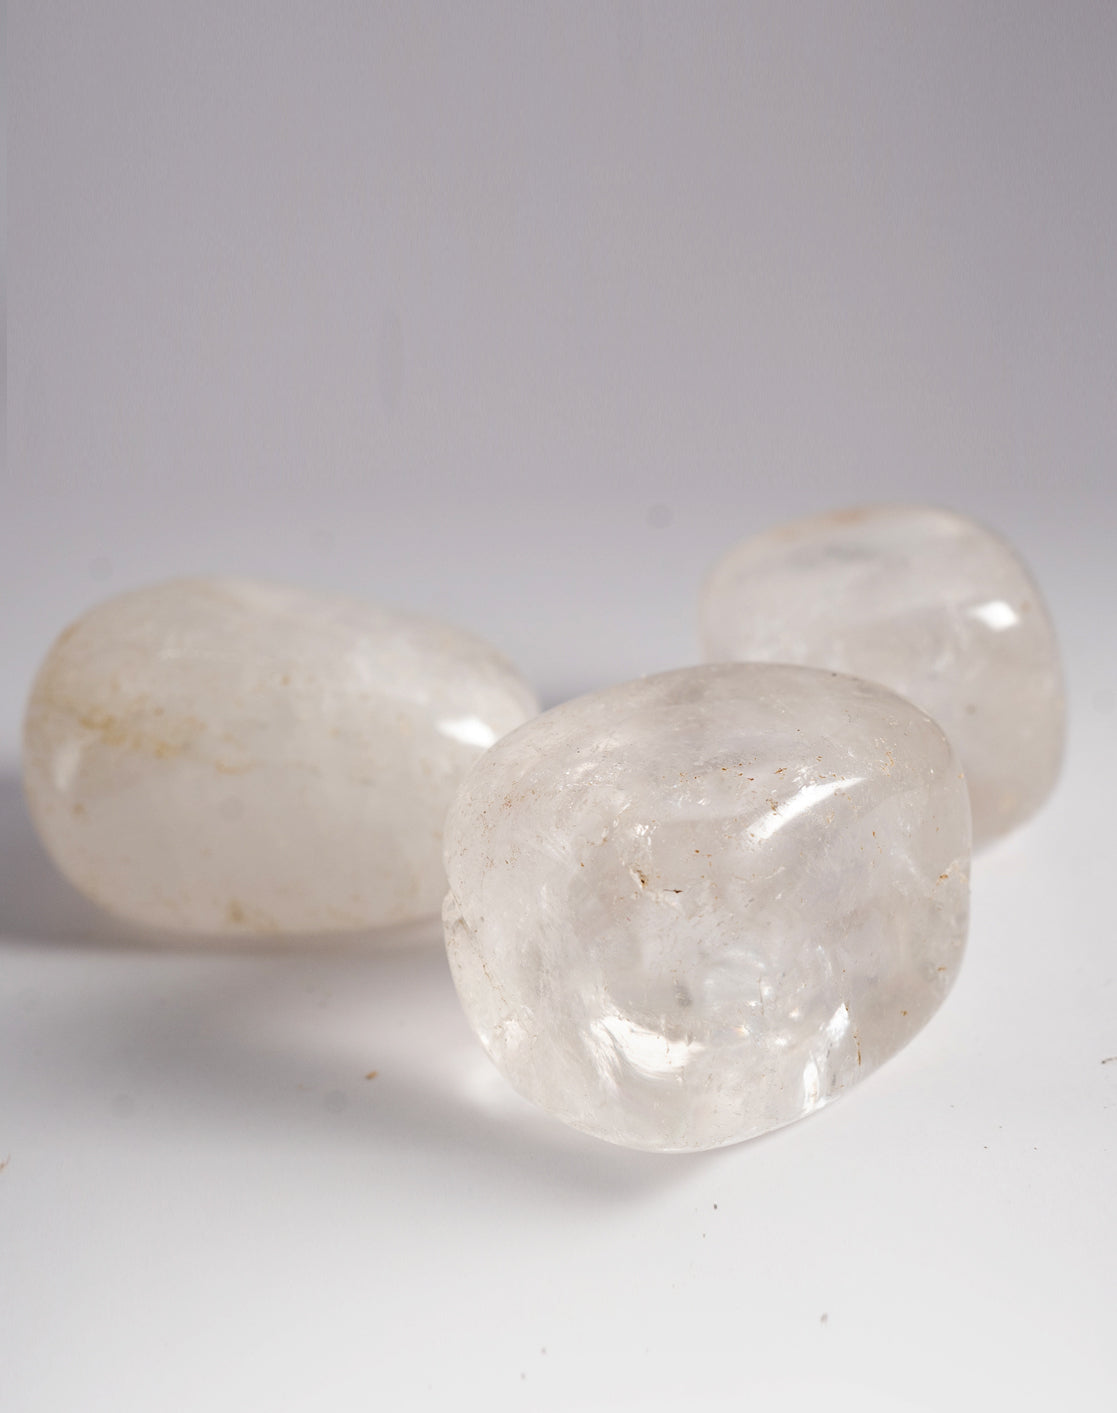 Clear Quartz Tumbled Crystals Set of 3 (1 Inch)